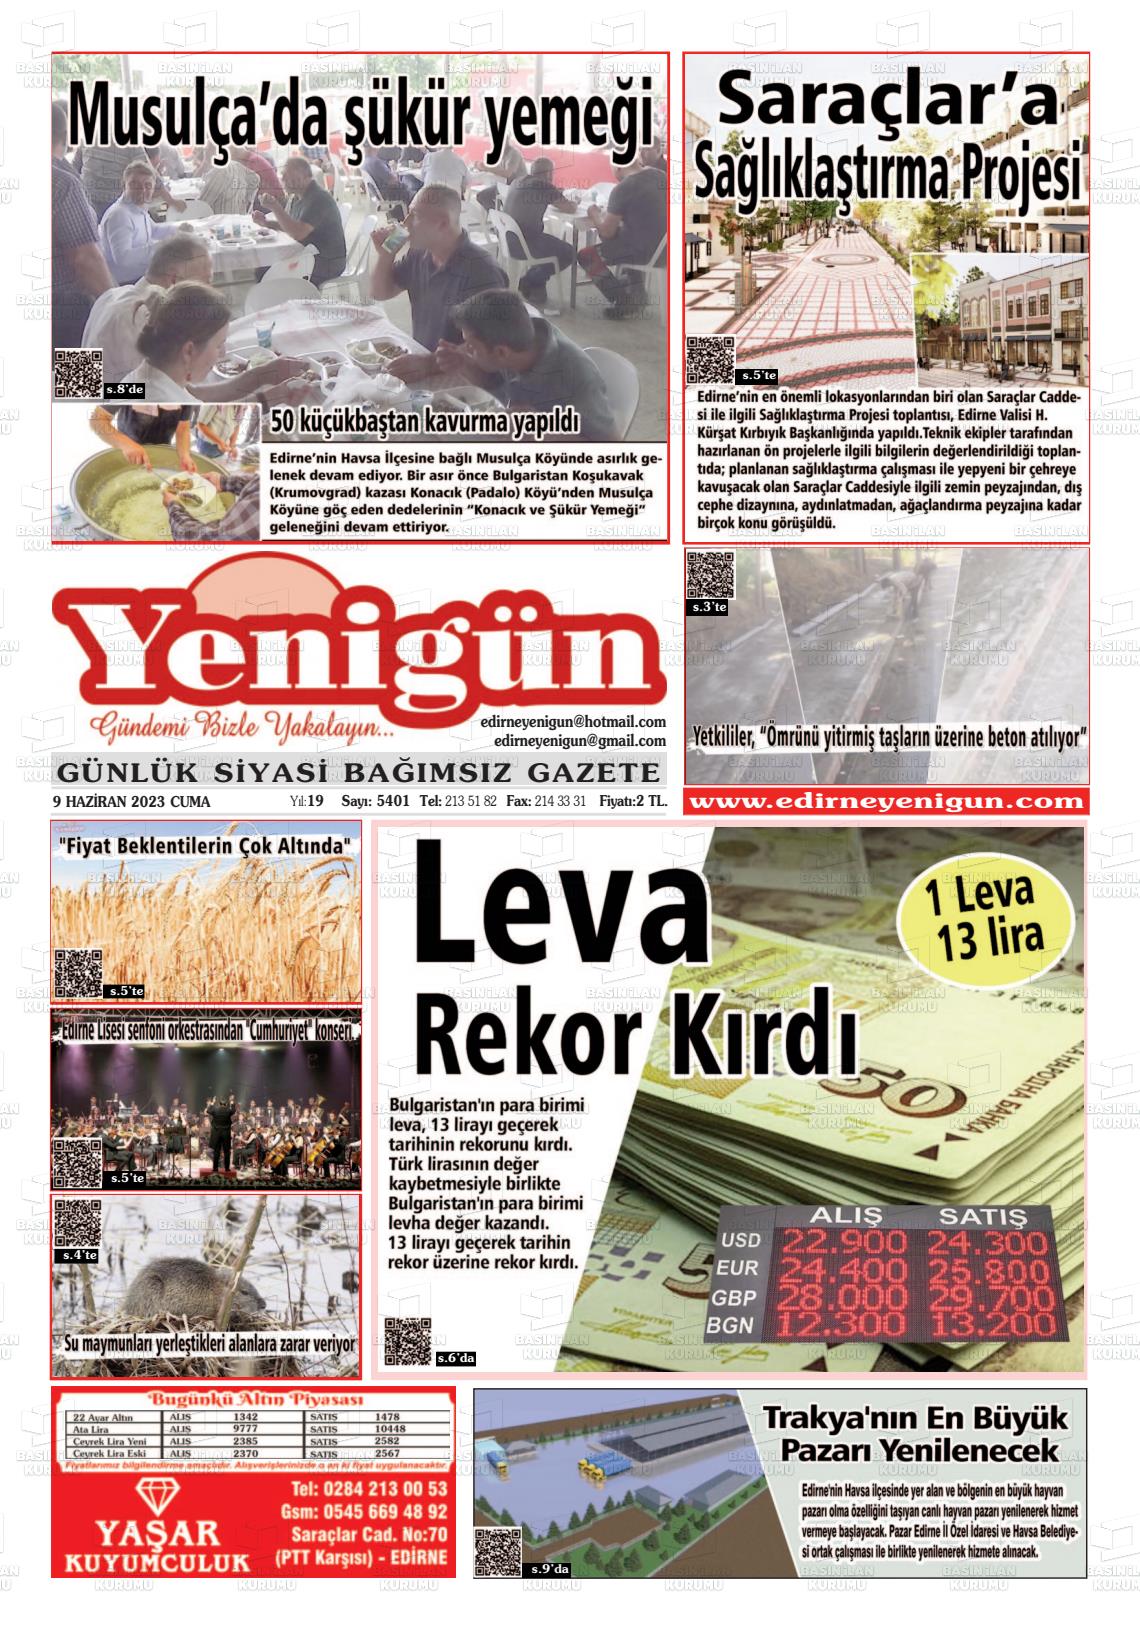 10 Haziran 2023 Edirne Yenigün Gazete Manşeti